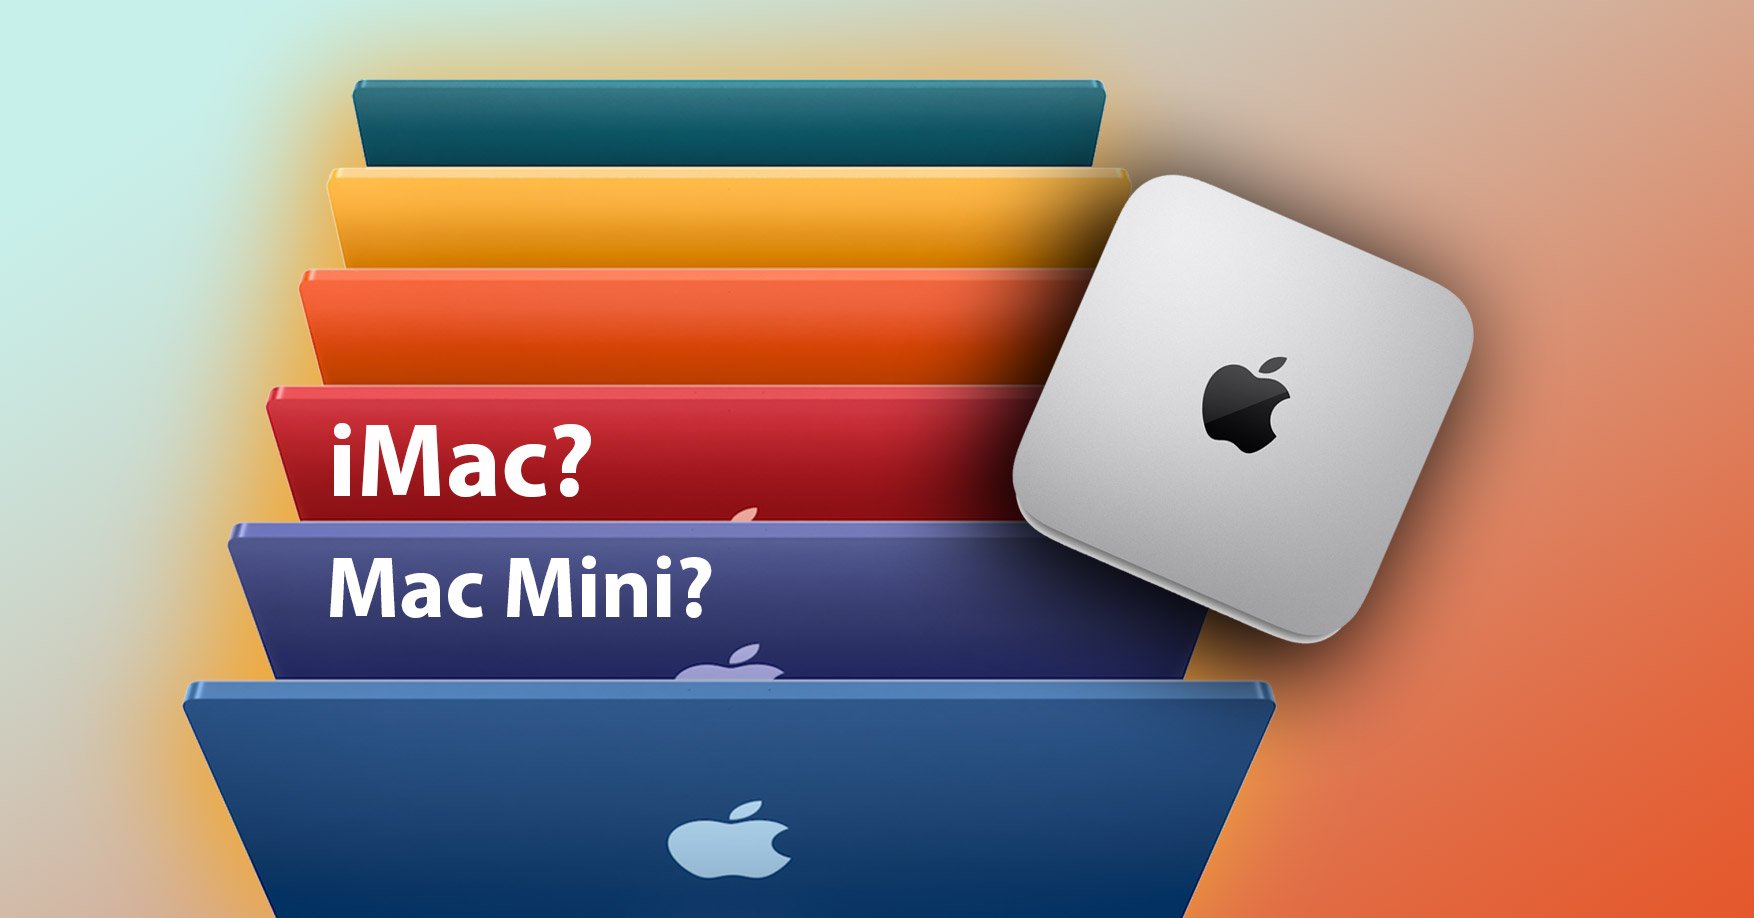 Thay vì mua iMac, mua Mac Mini + màn hình 4K thì có tiết kiện tiền